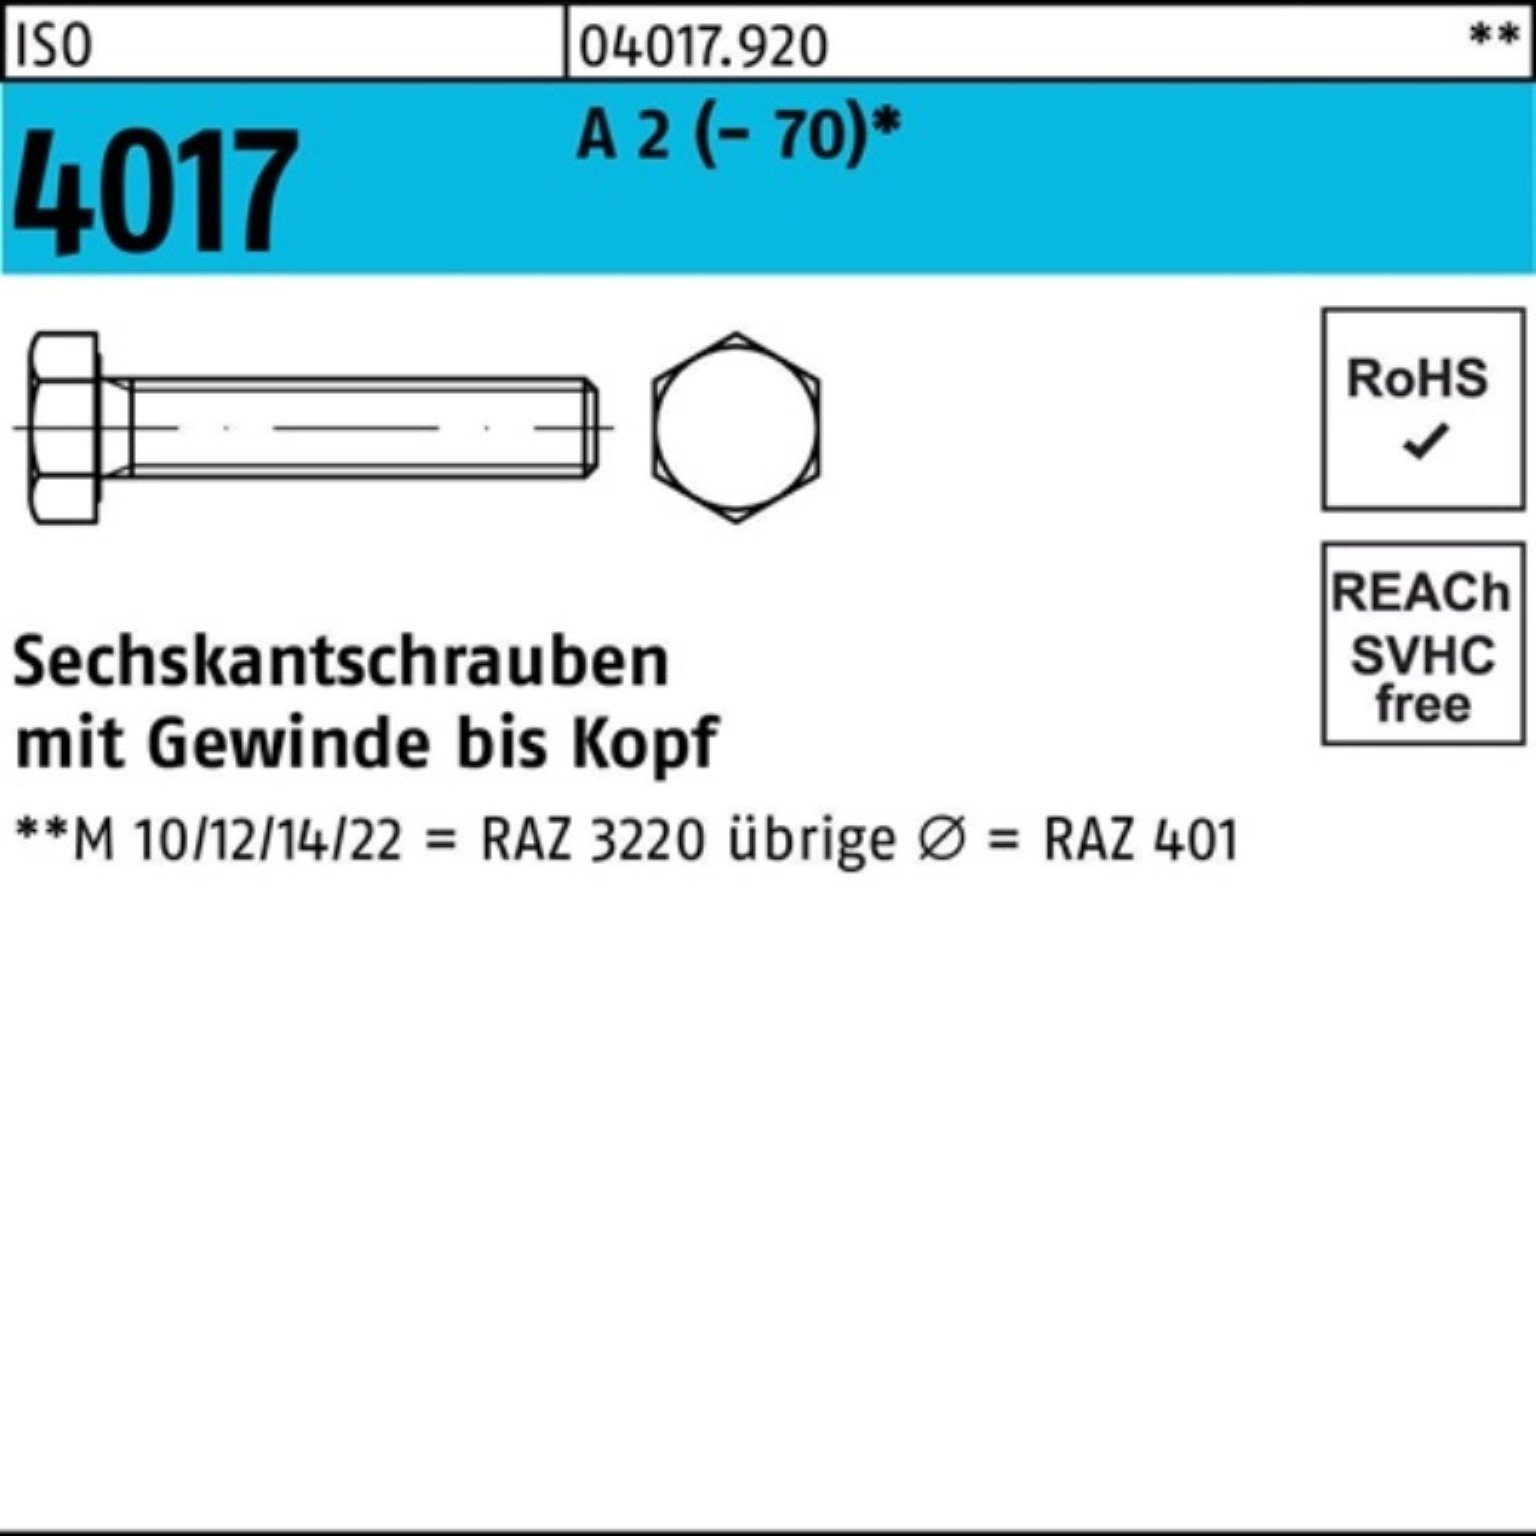 Bufab Sechskantschraube 100er Pack Sechskantschraube ISO 4017 VG M10x 150 A 2 (70) 1 Stück